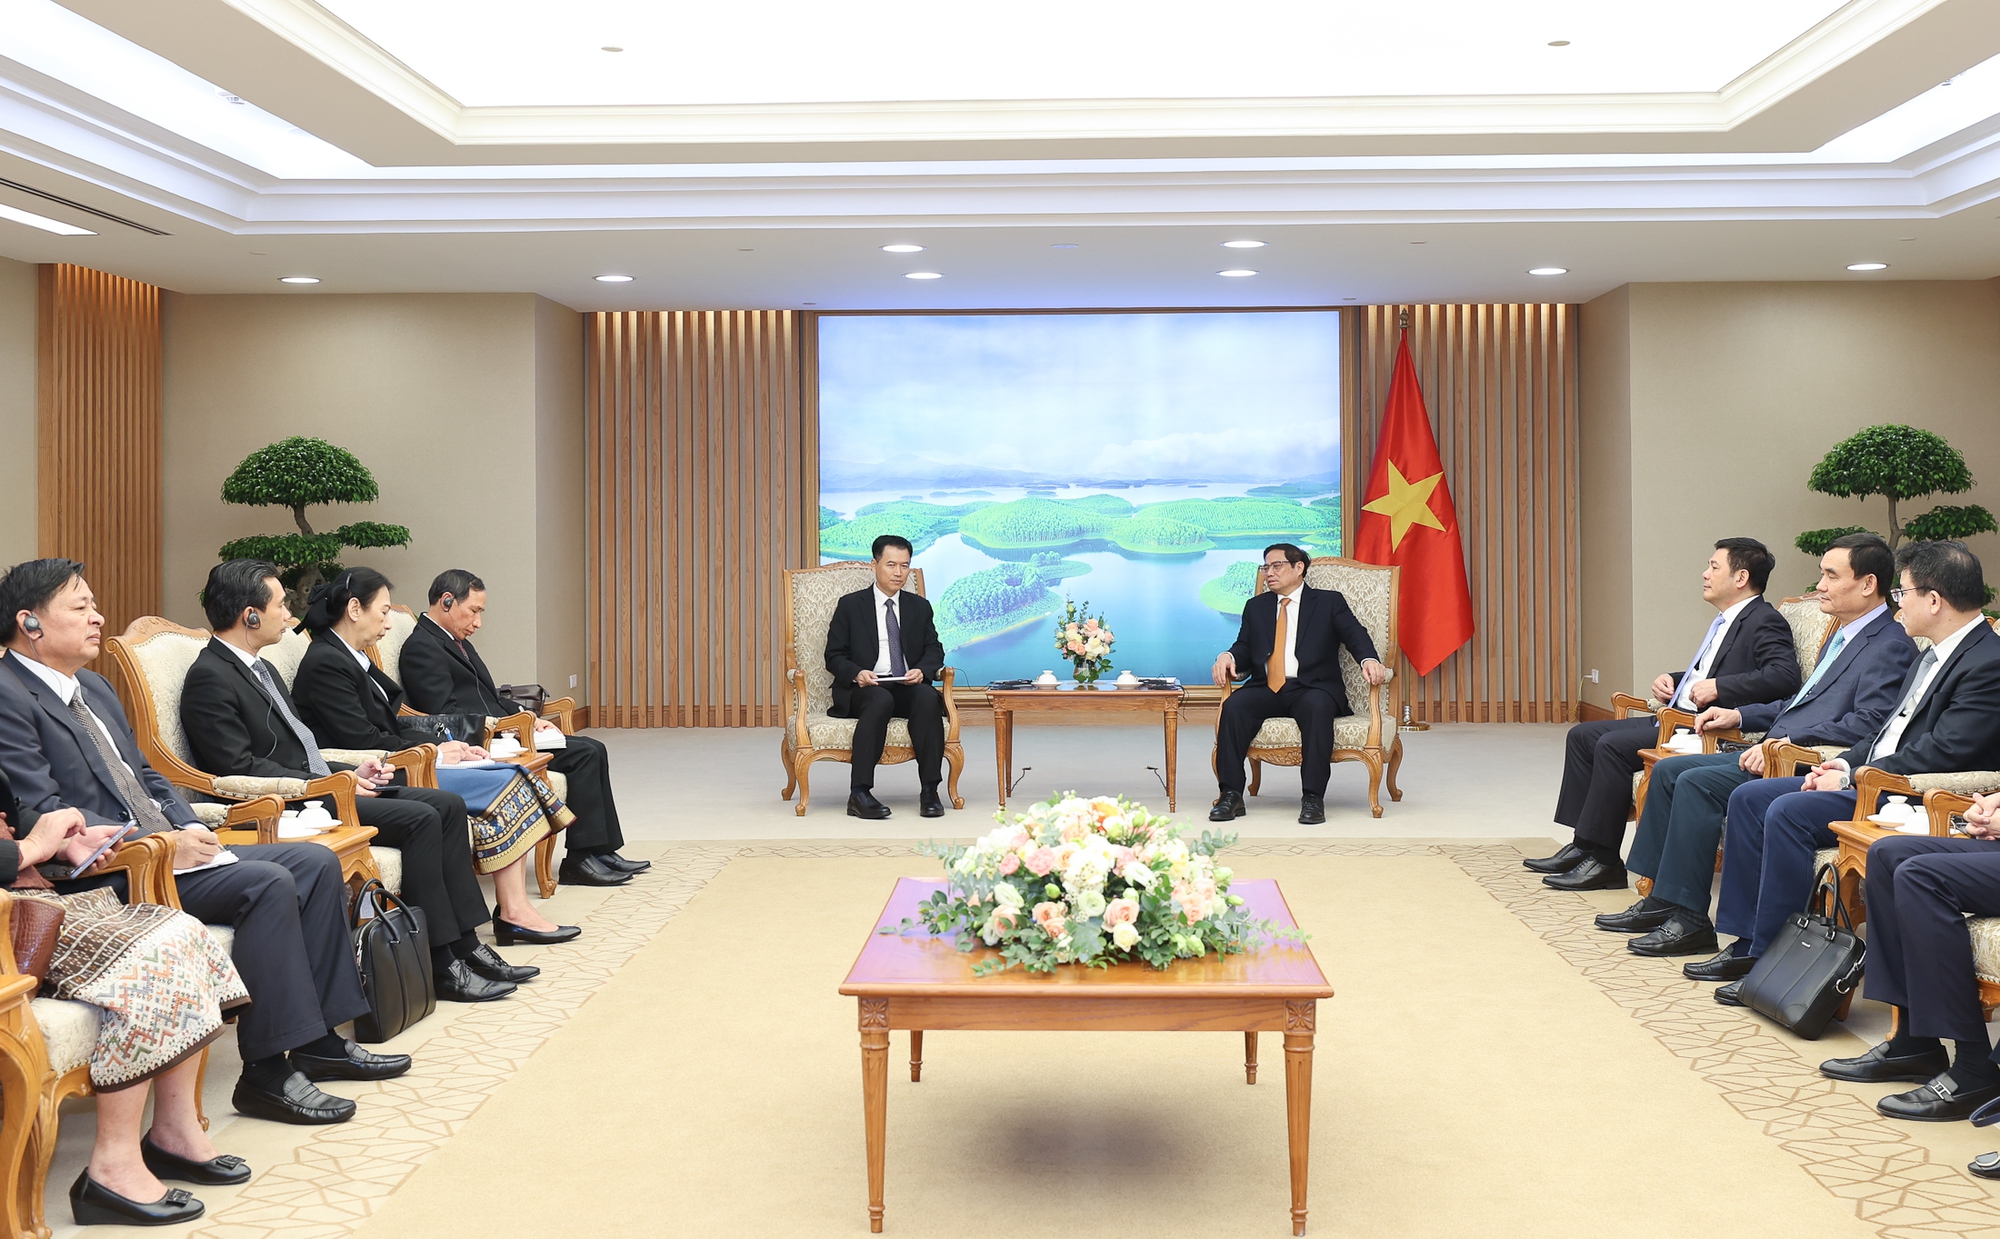 Thủ tướng đề nghị tăng cường kết nối giao thông, thúc đẩy thương mại Việt Nam - Lào - Ảnh 2.